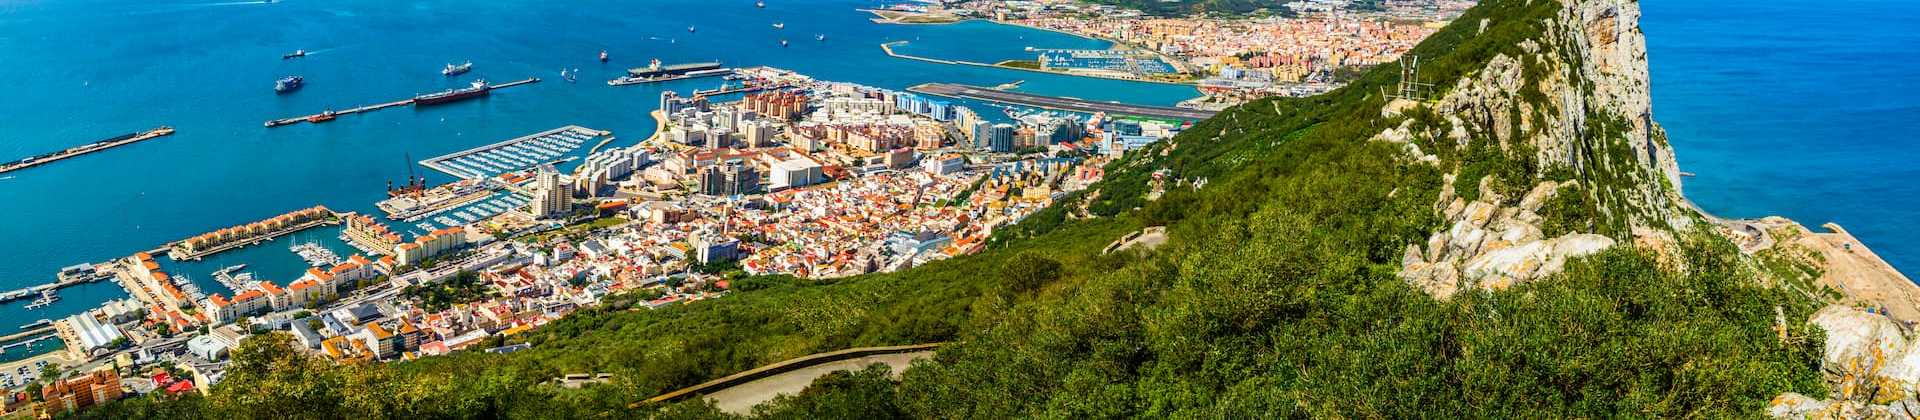 Britons Traveling to Gibraltar May Face New Visa Requirements and Border Checks